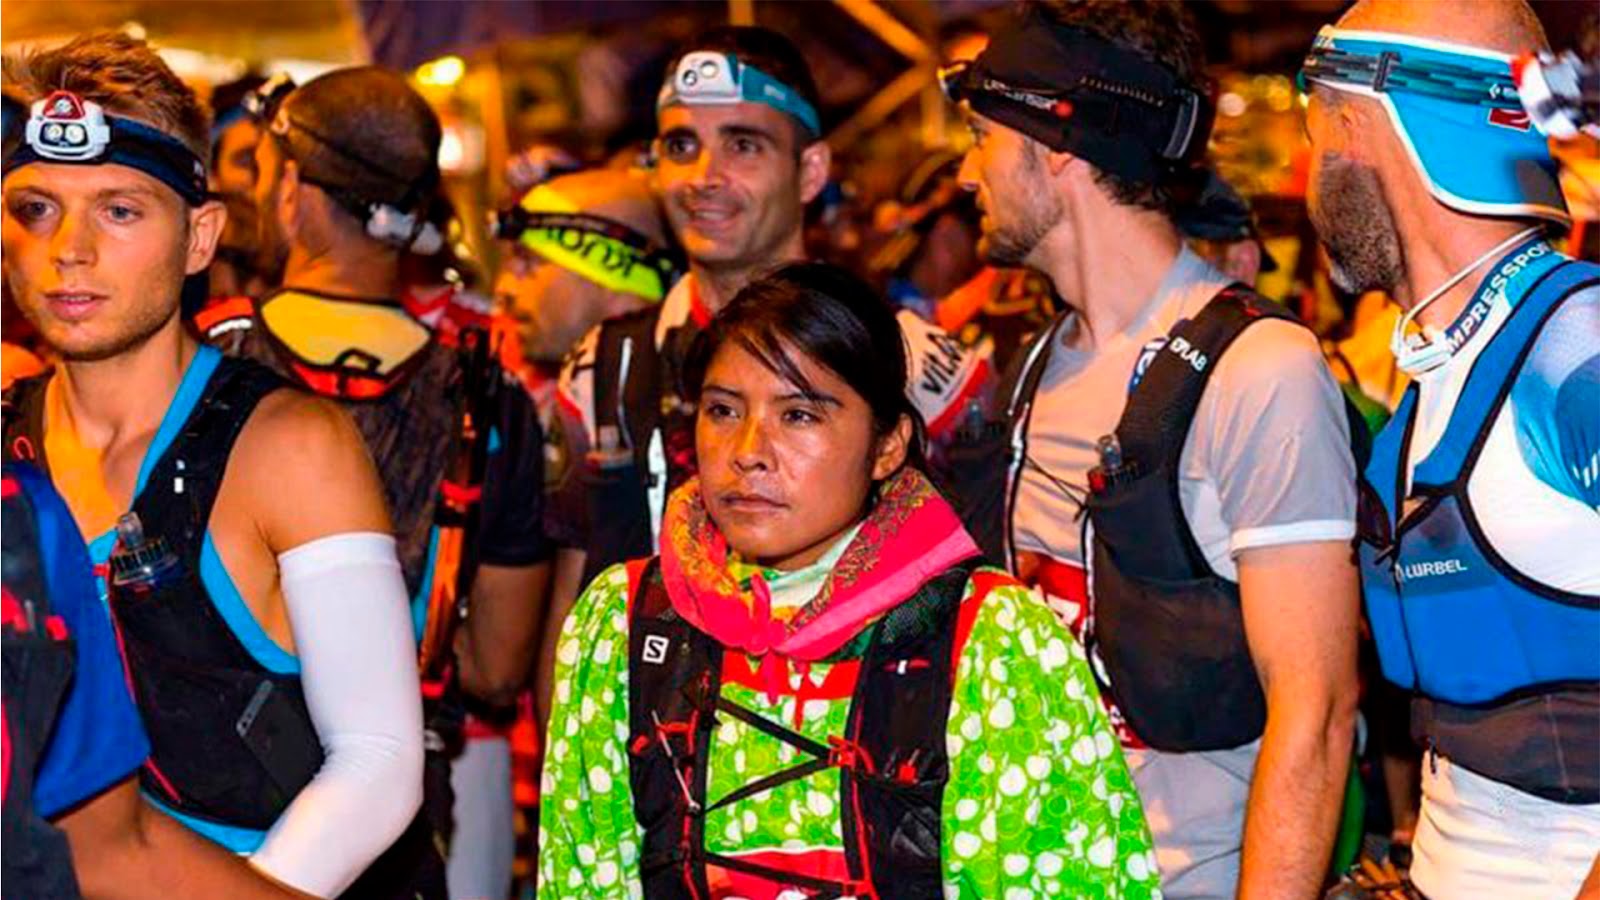 La corredora rarámuri Lorena Ramírez gana en ultramaratón europeo